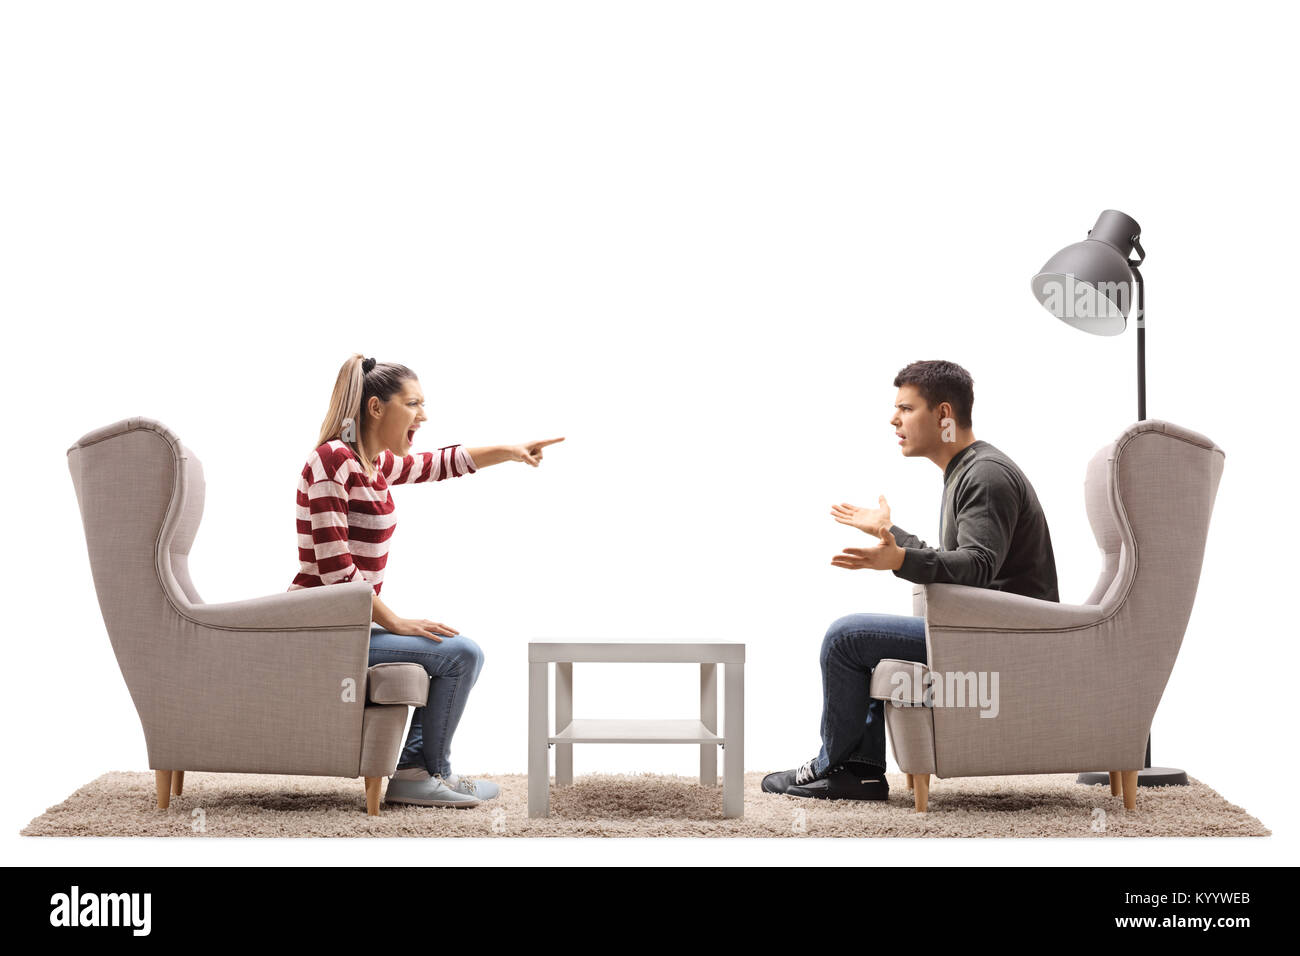 Jeune couple assis dans les fauteuils having an argument isolé sur fond blanc Banque D'Images